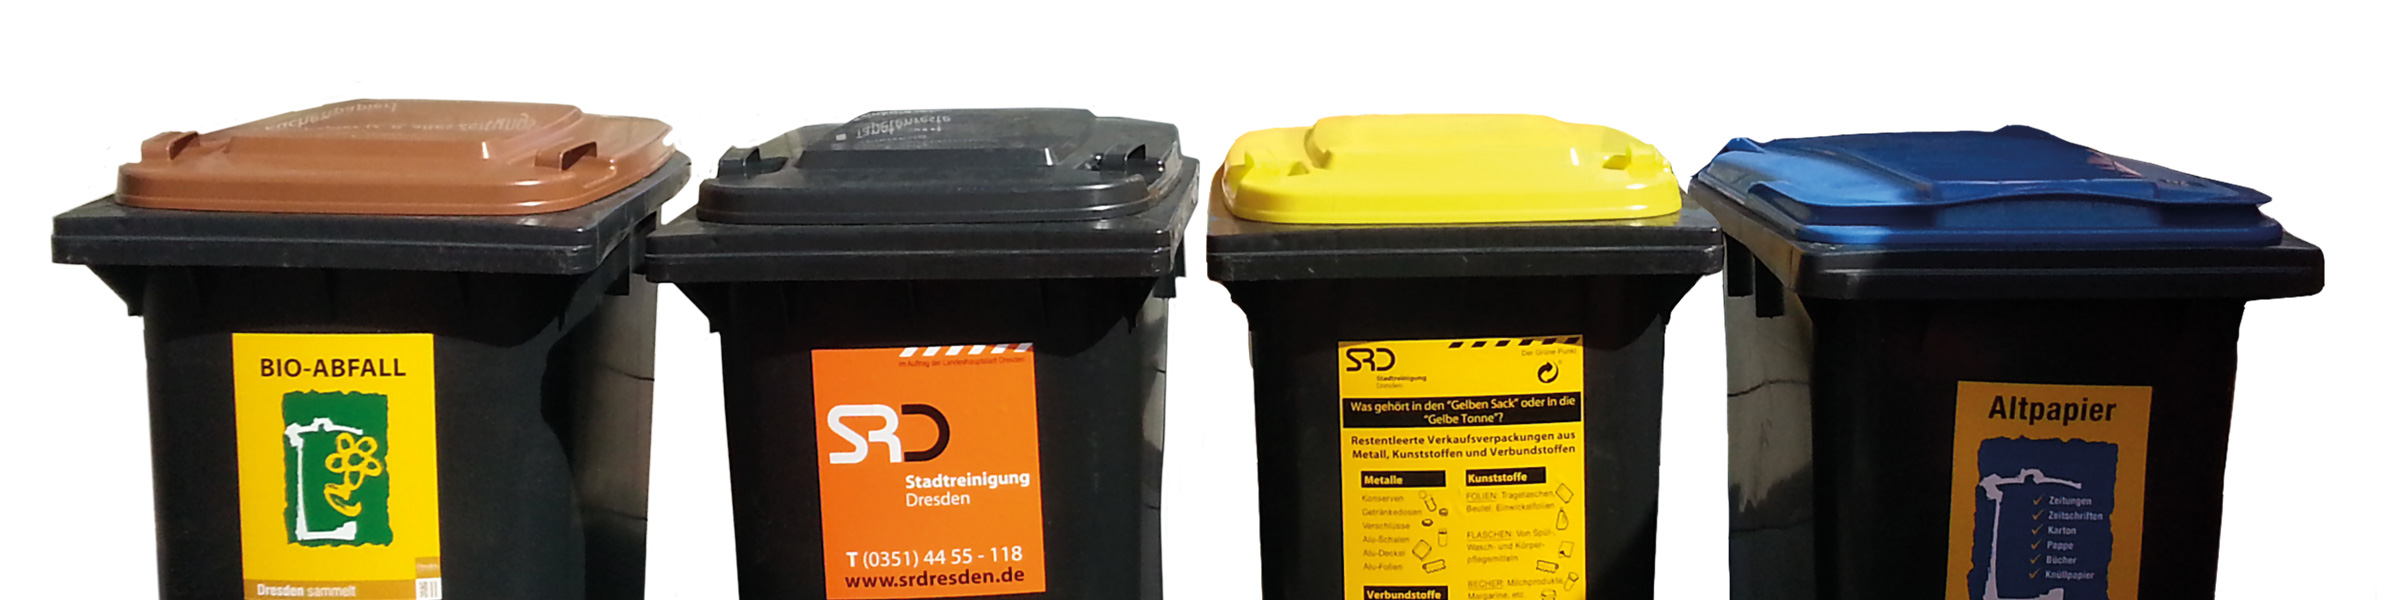 Abfallbehälter (Bio-, Restabfall-, Gelbe und Blaue Tonne)